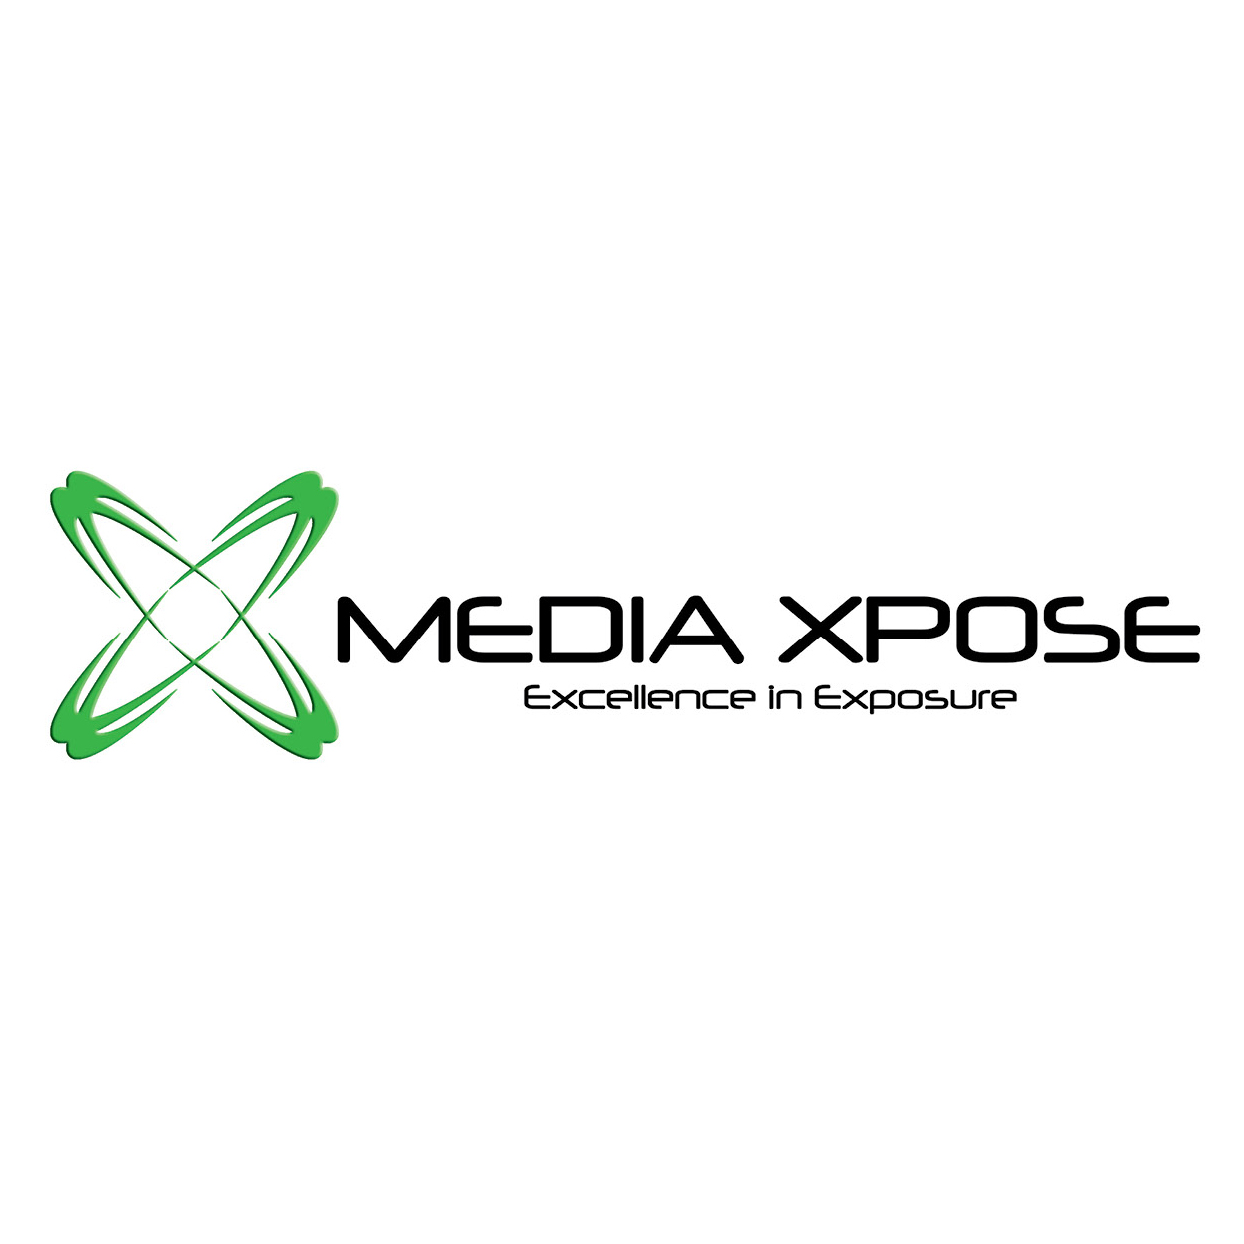 MediaXpose